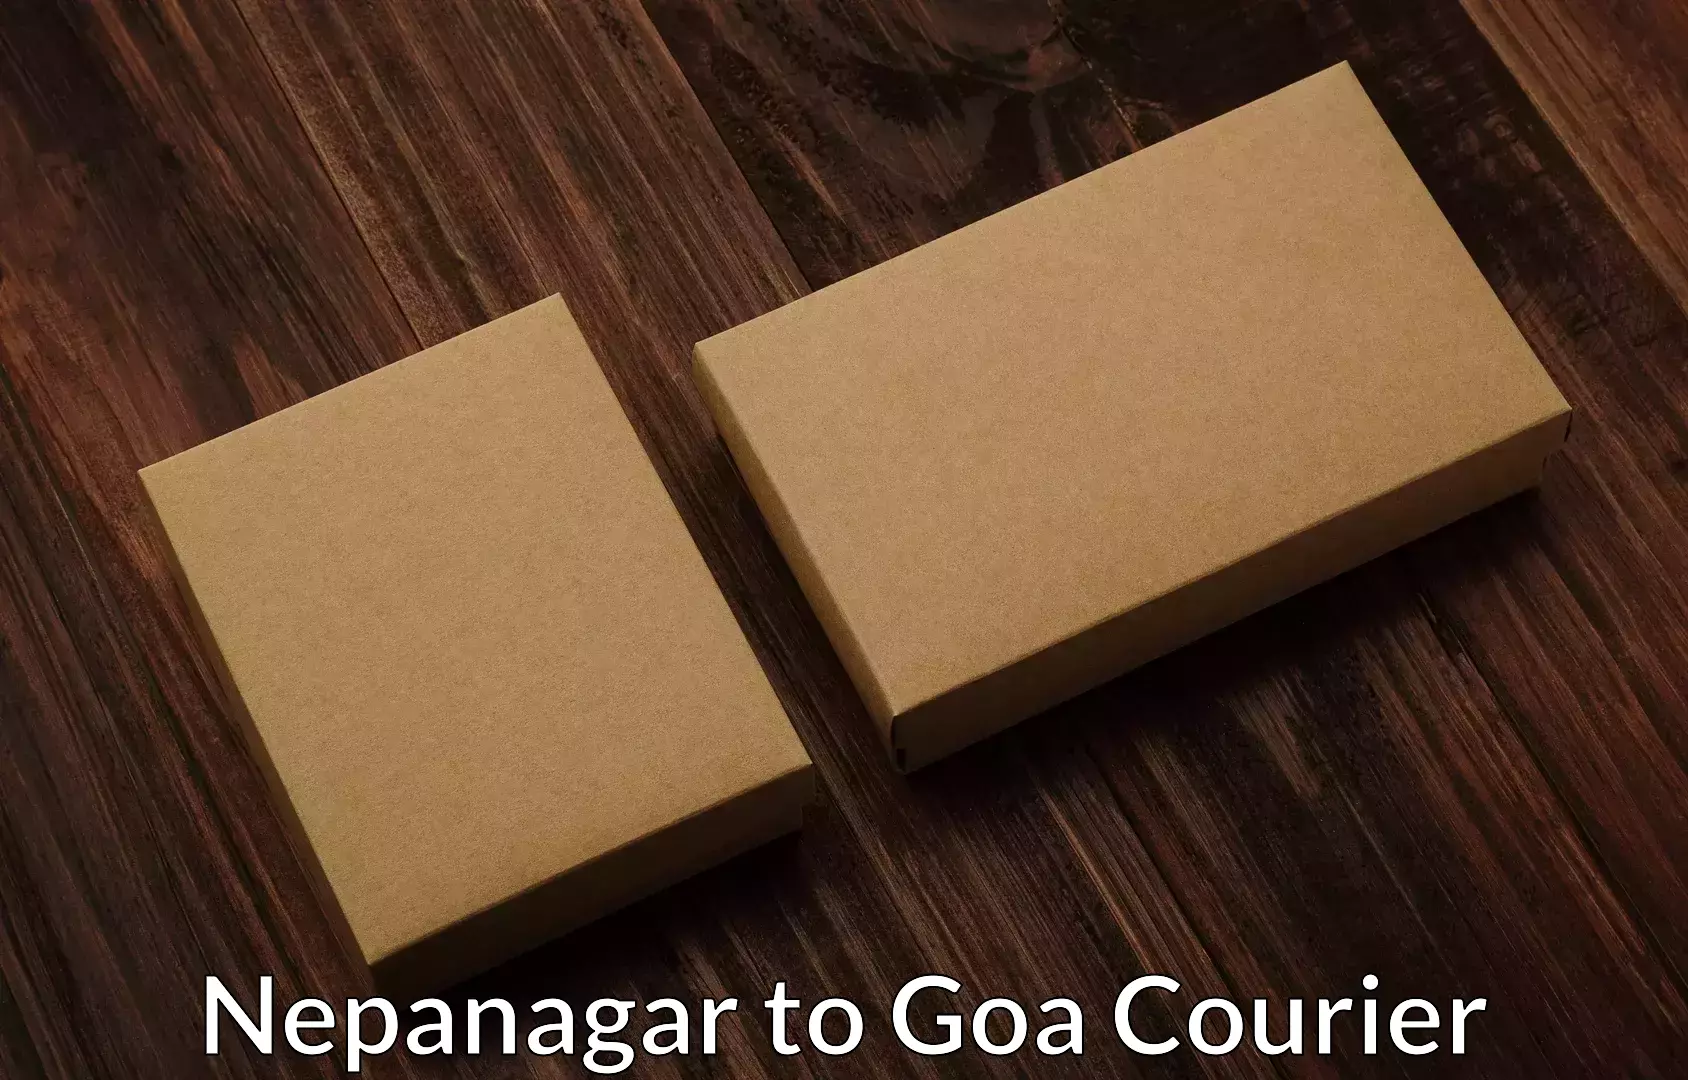 Home shifting experts Nepanagar to South Goa